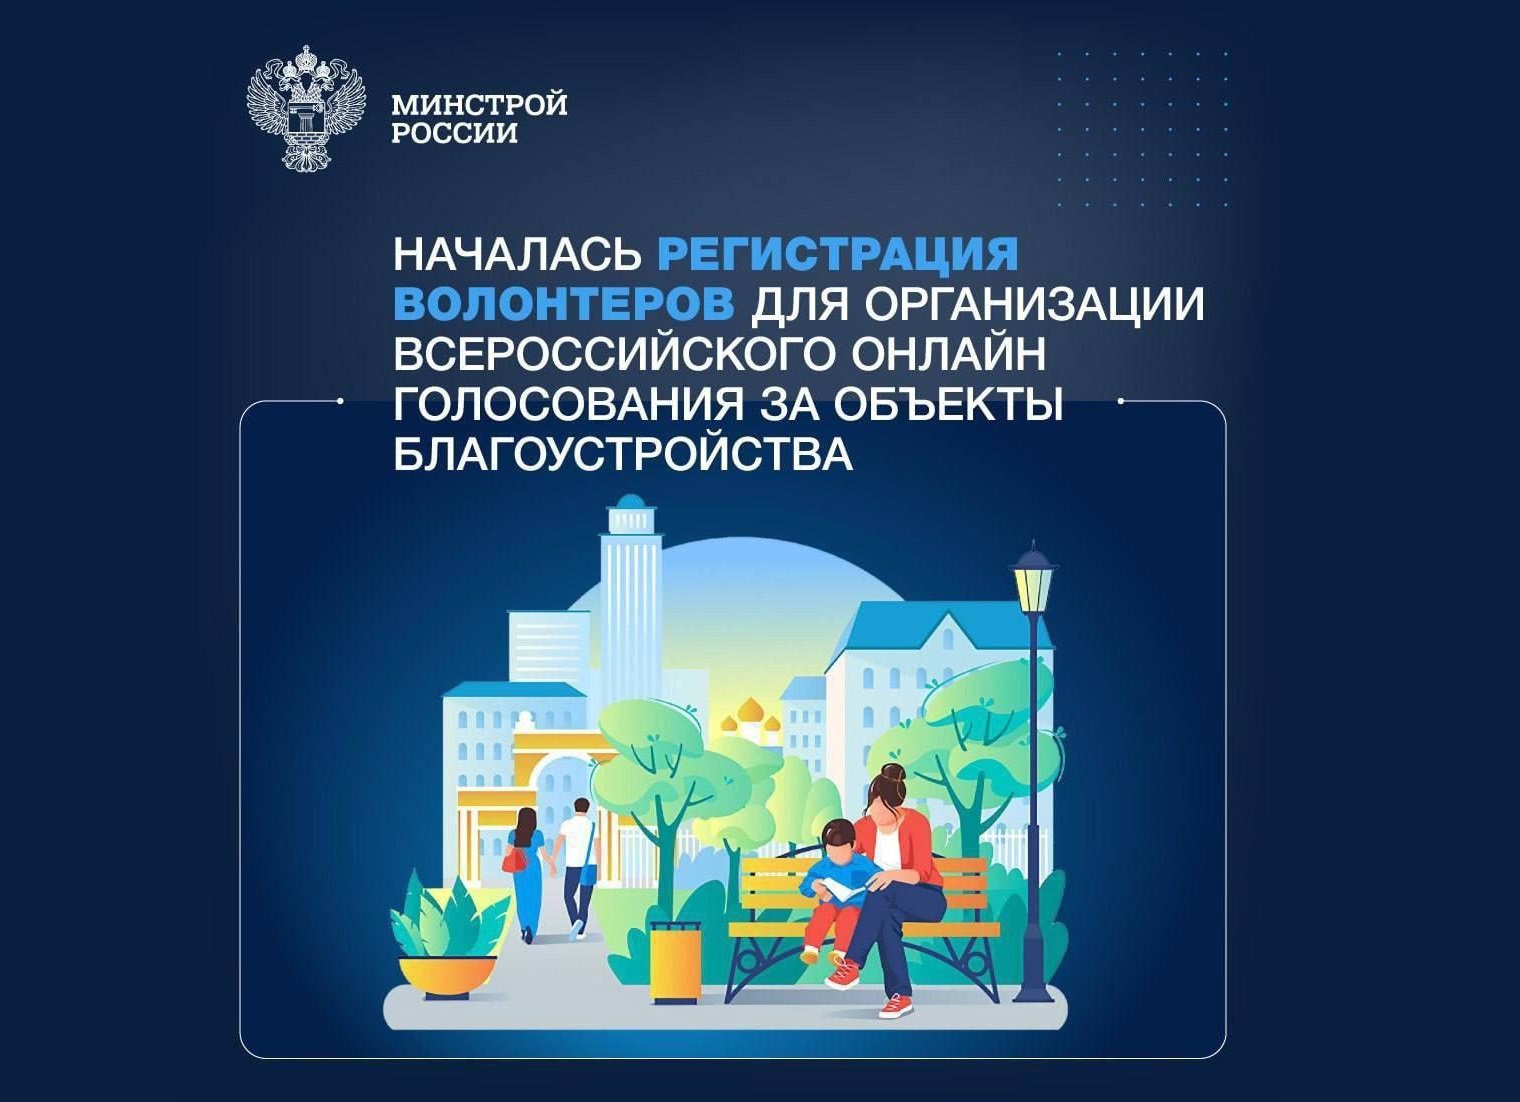 Открыта регистрация волонтёров для организации Всероссийского онлайн-голосования за благоустройство общественных пространств.